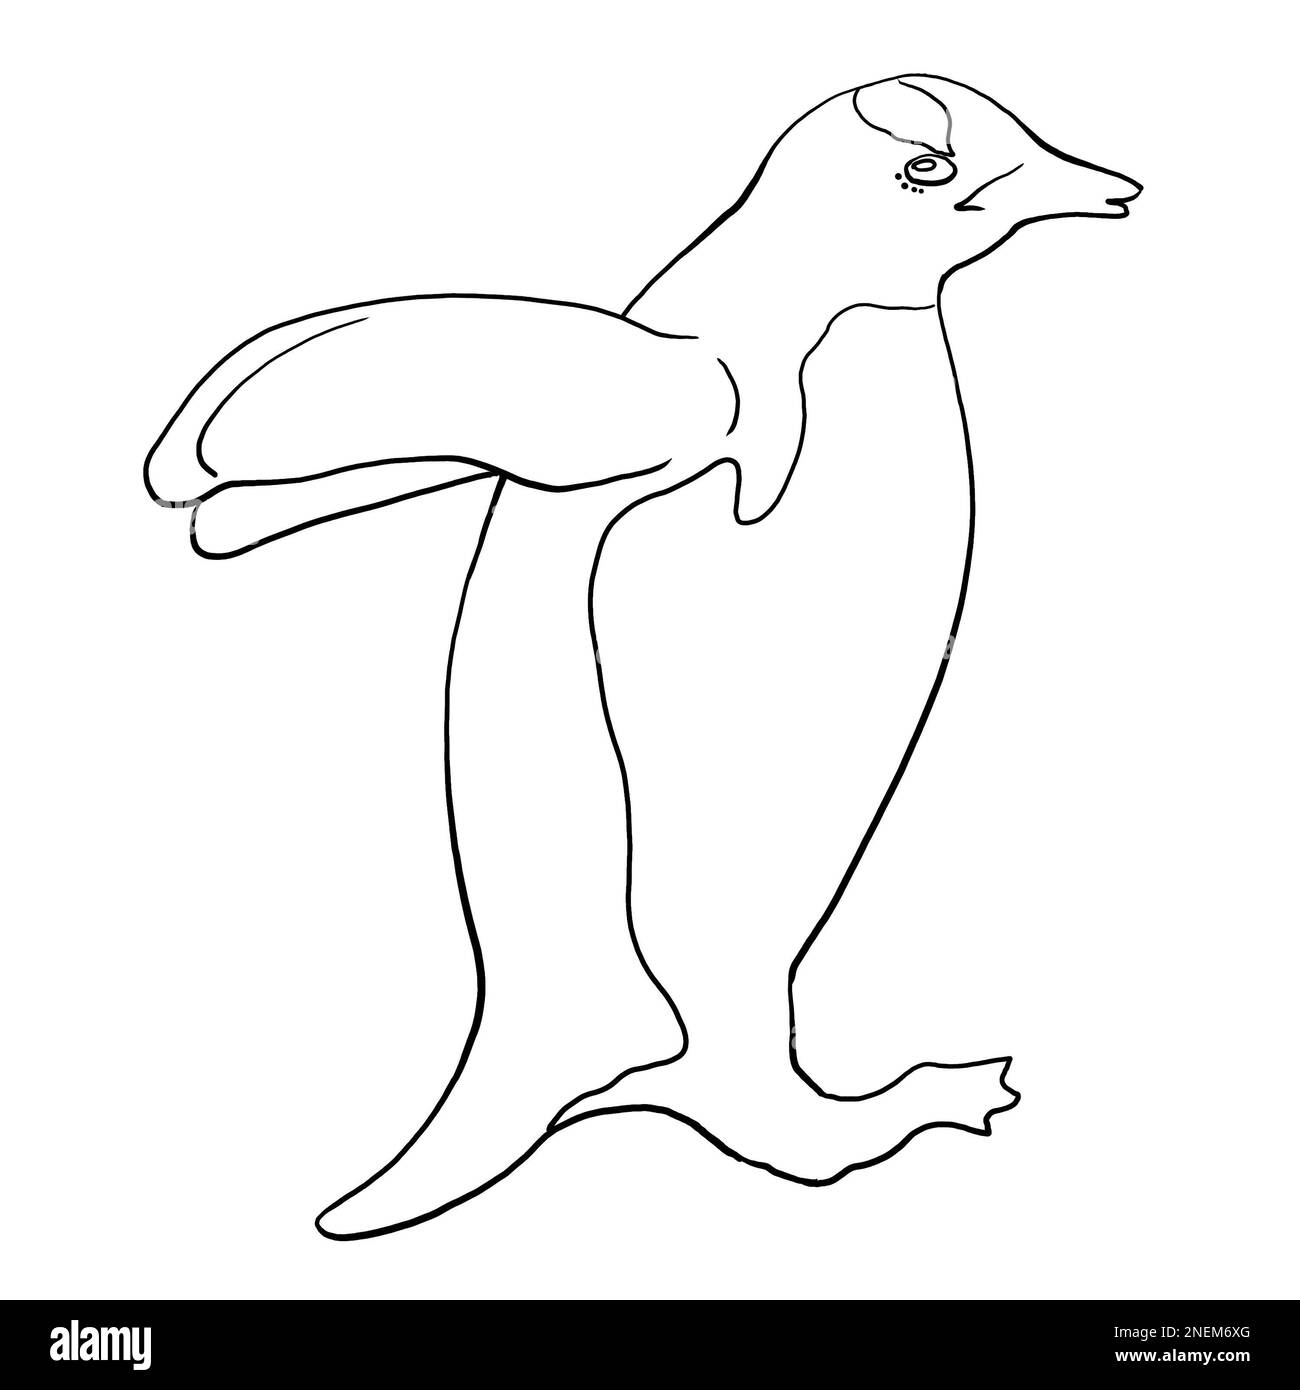 Dessin linéaire d'un pingouin. Illustration de haute qualité Banque D'Images